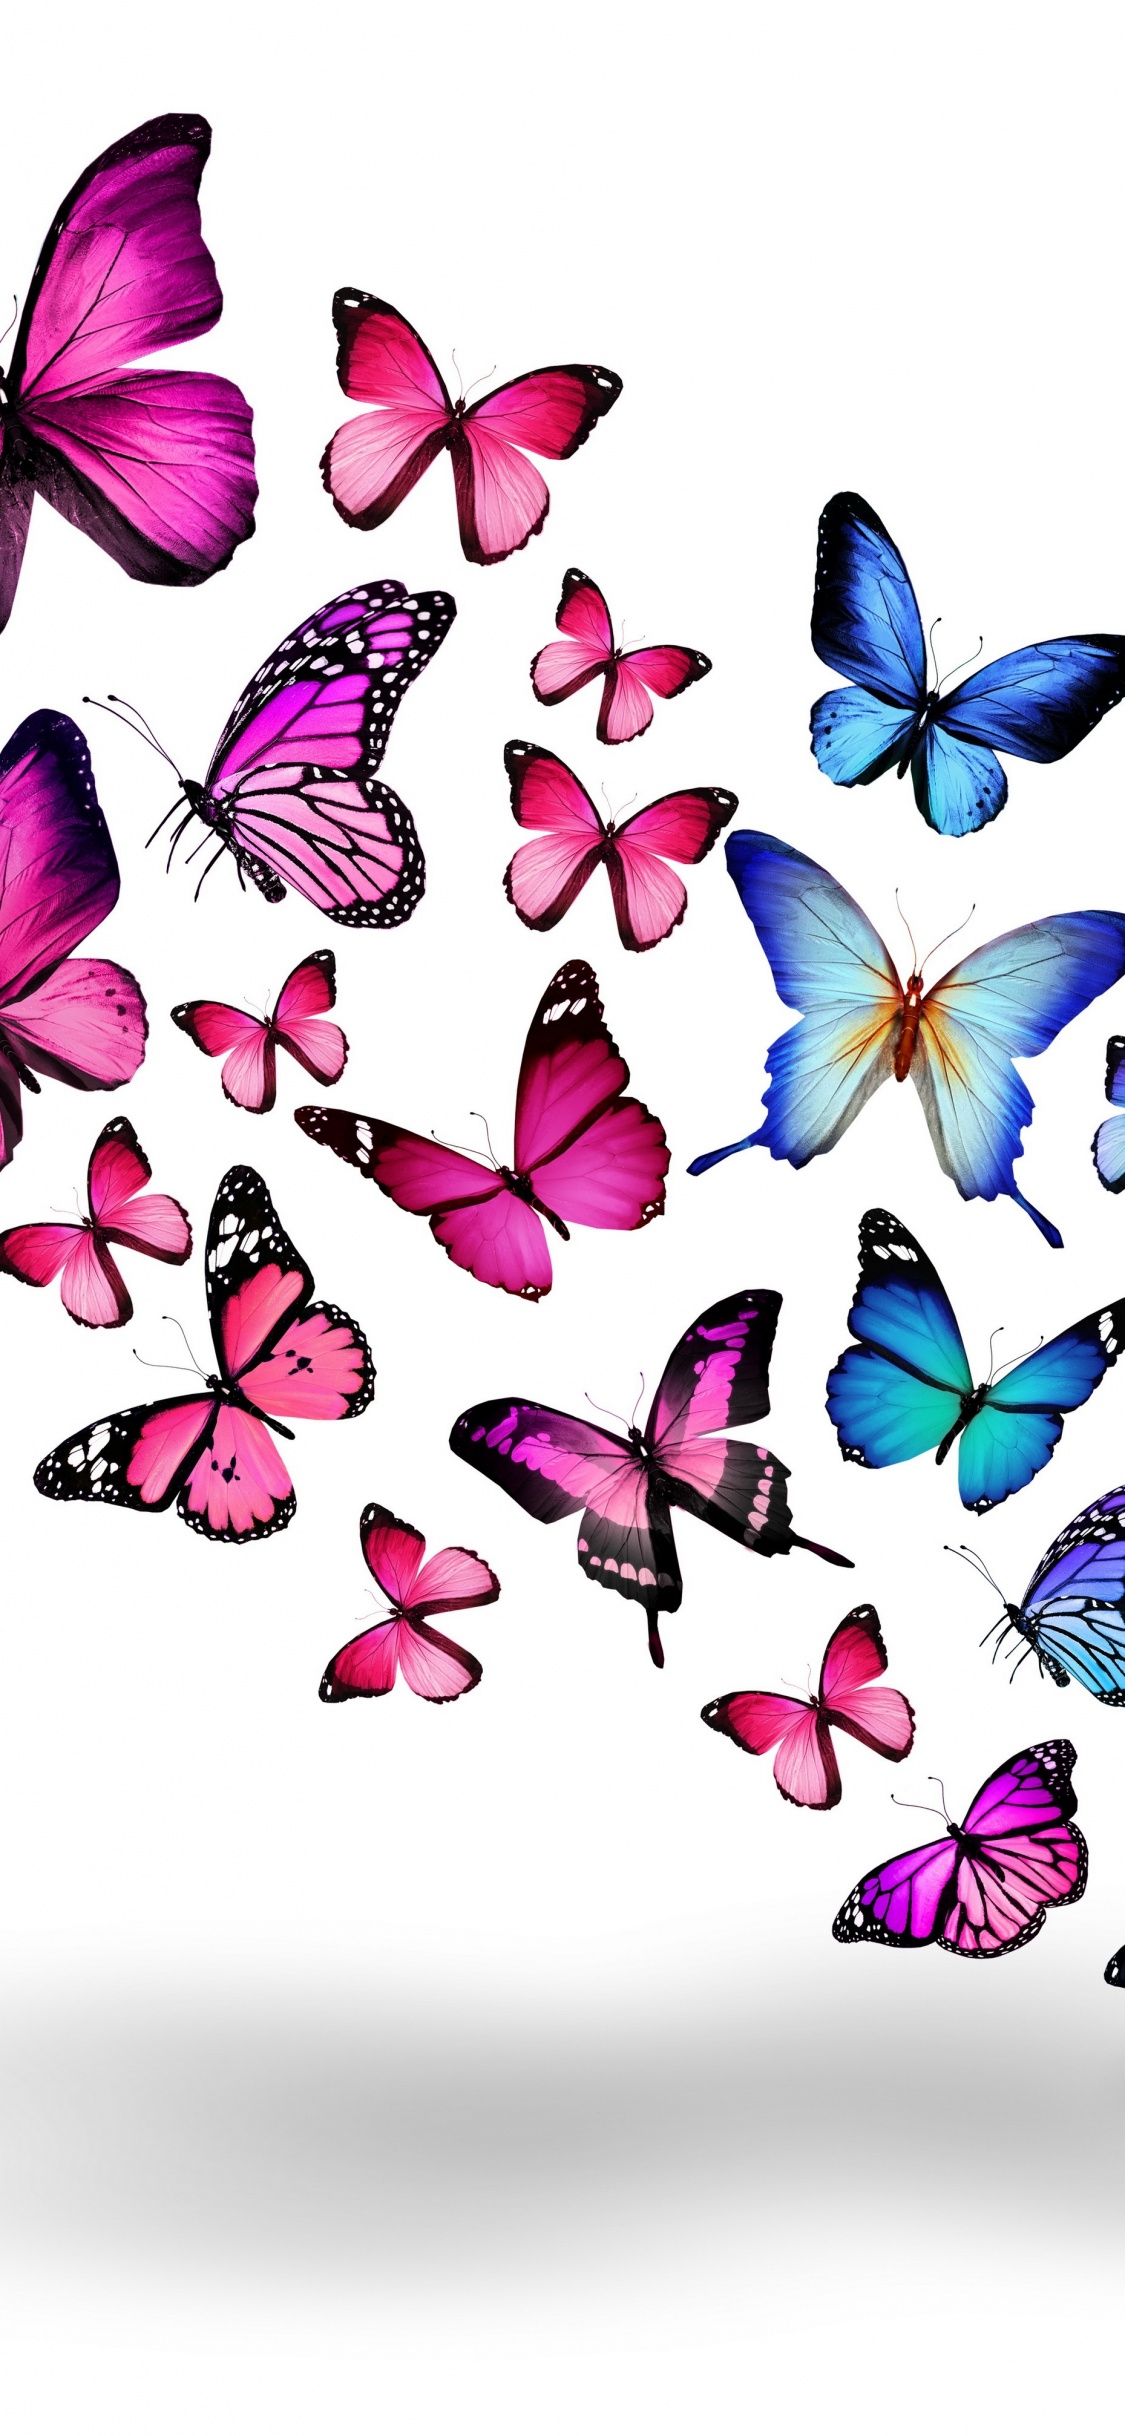 Papillons Bleus et Violets Sur Fond Blanc. Wallpaper in 1125x2436 Resolution